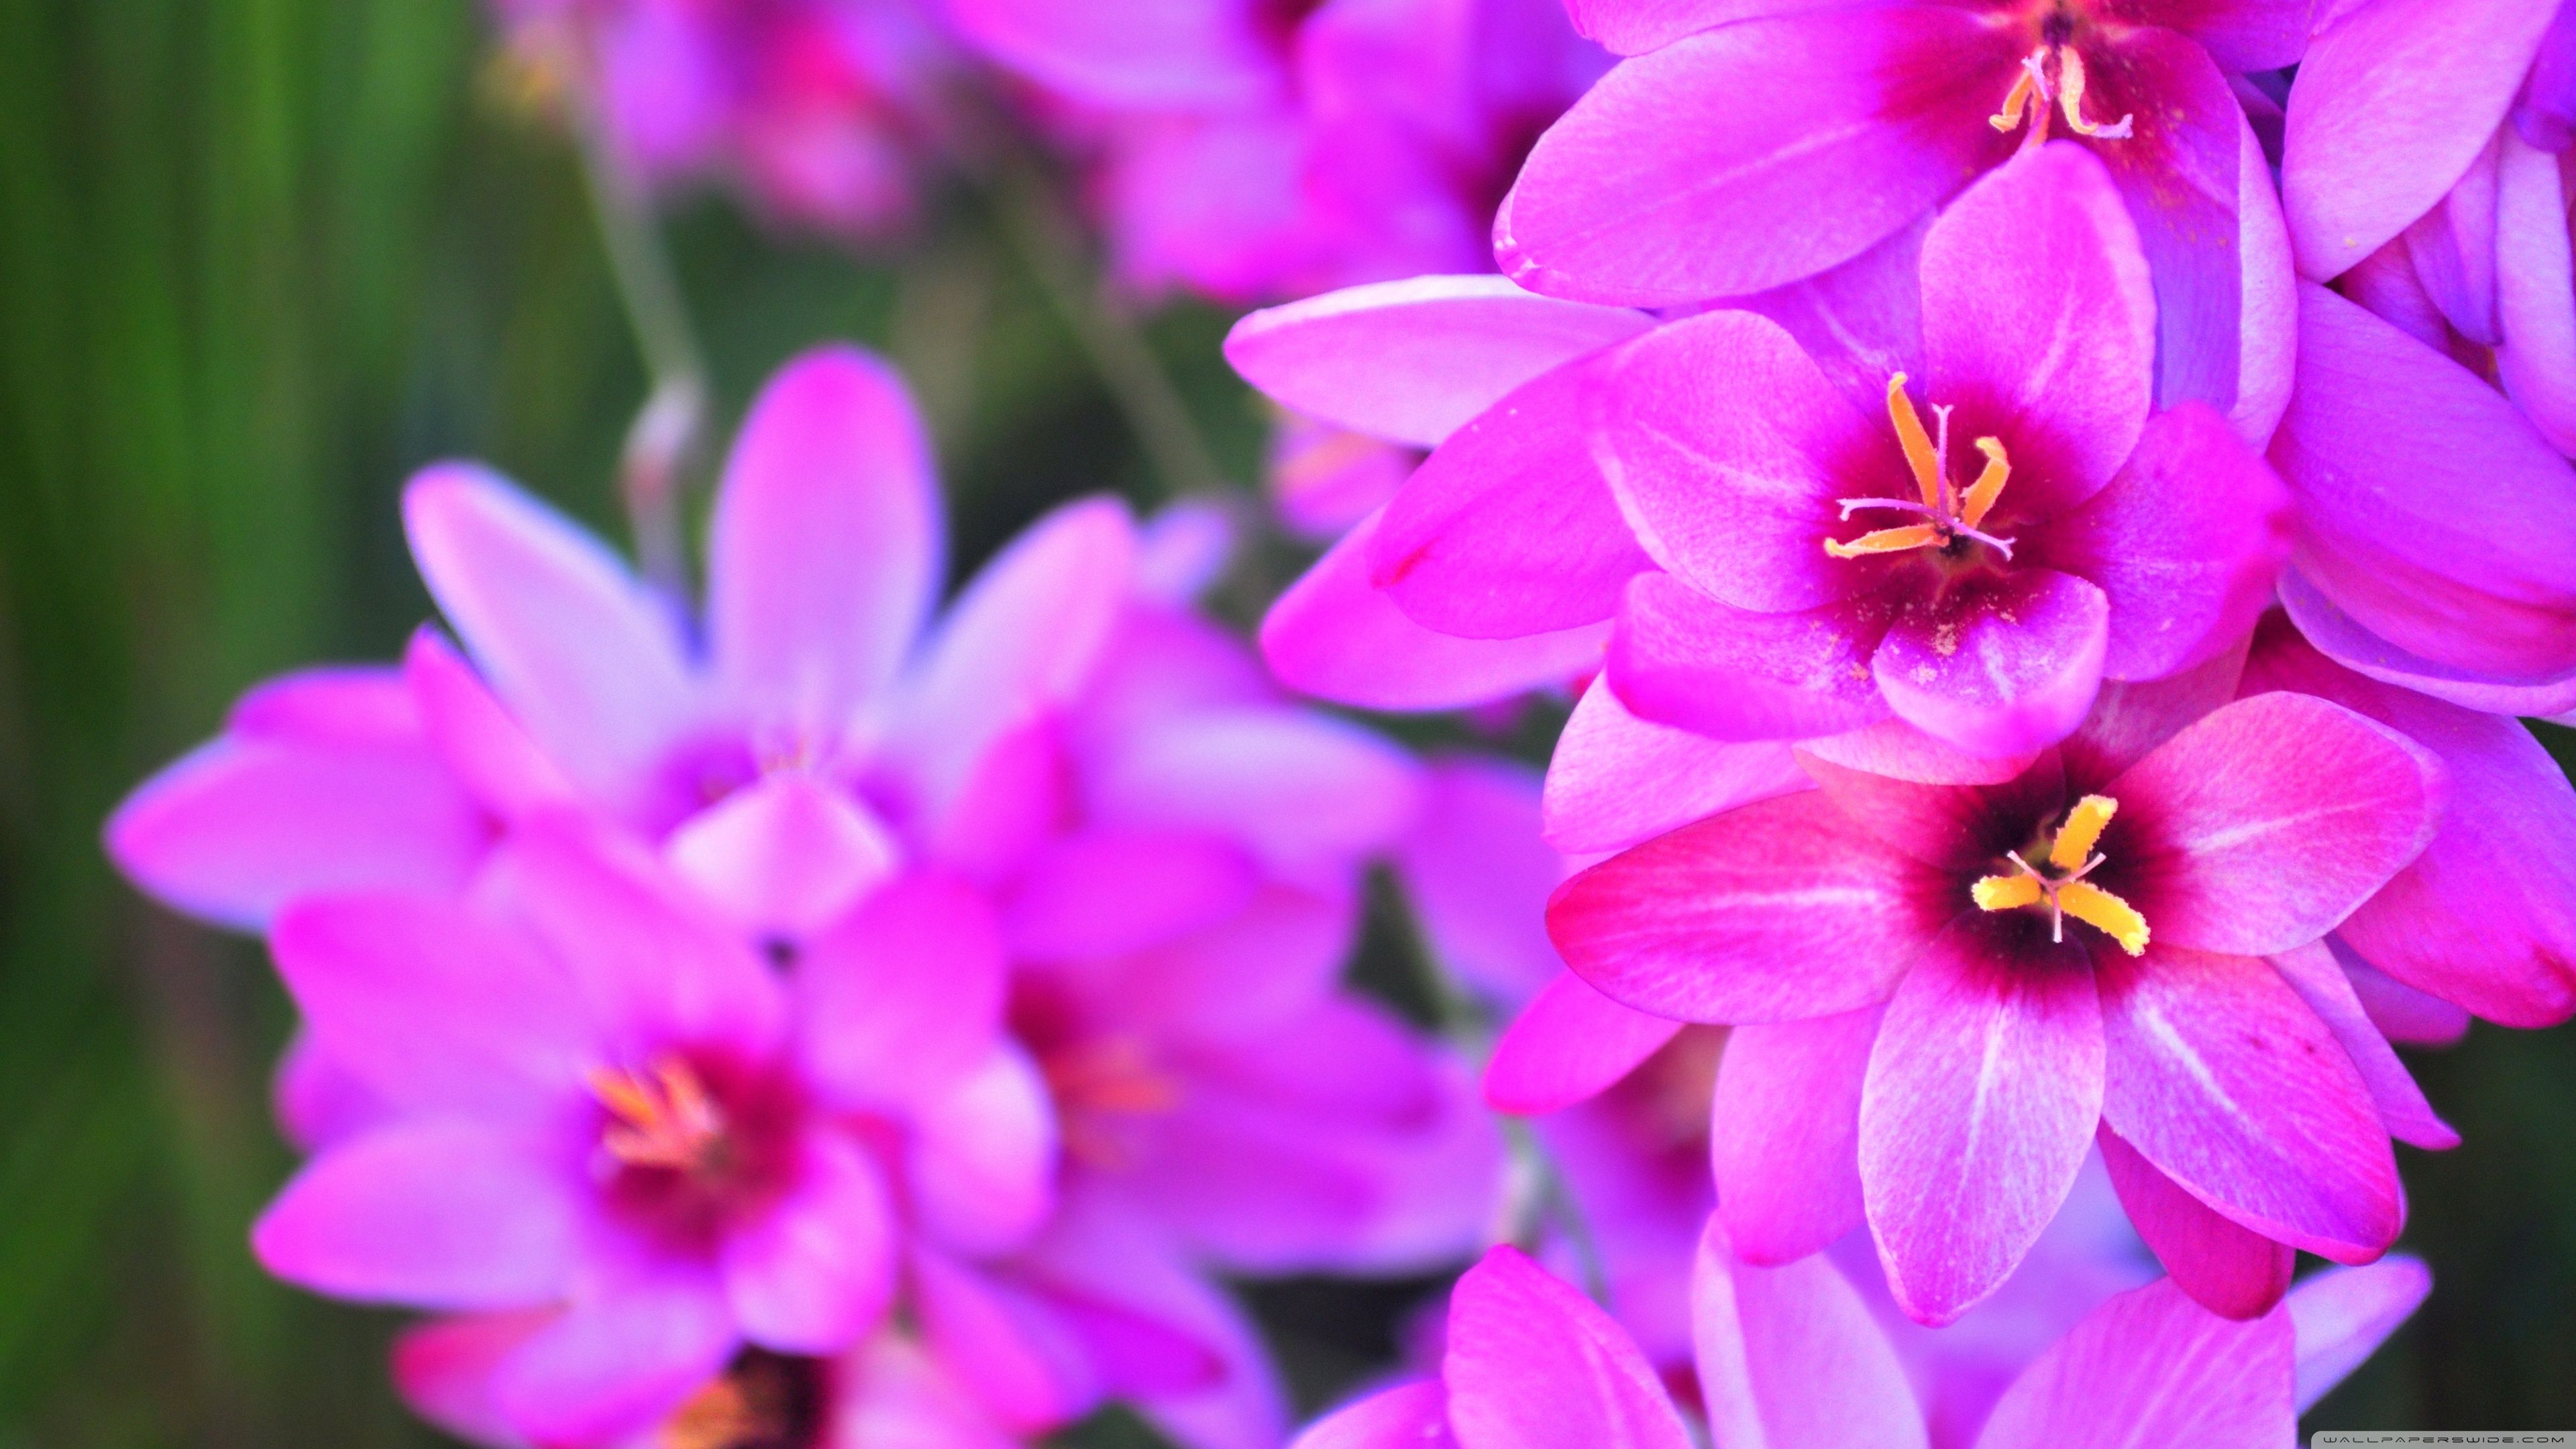 Vibrant Flowers Ultra HD Desktop Background Wallpaper for 4K UHD